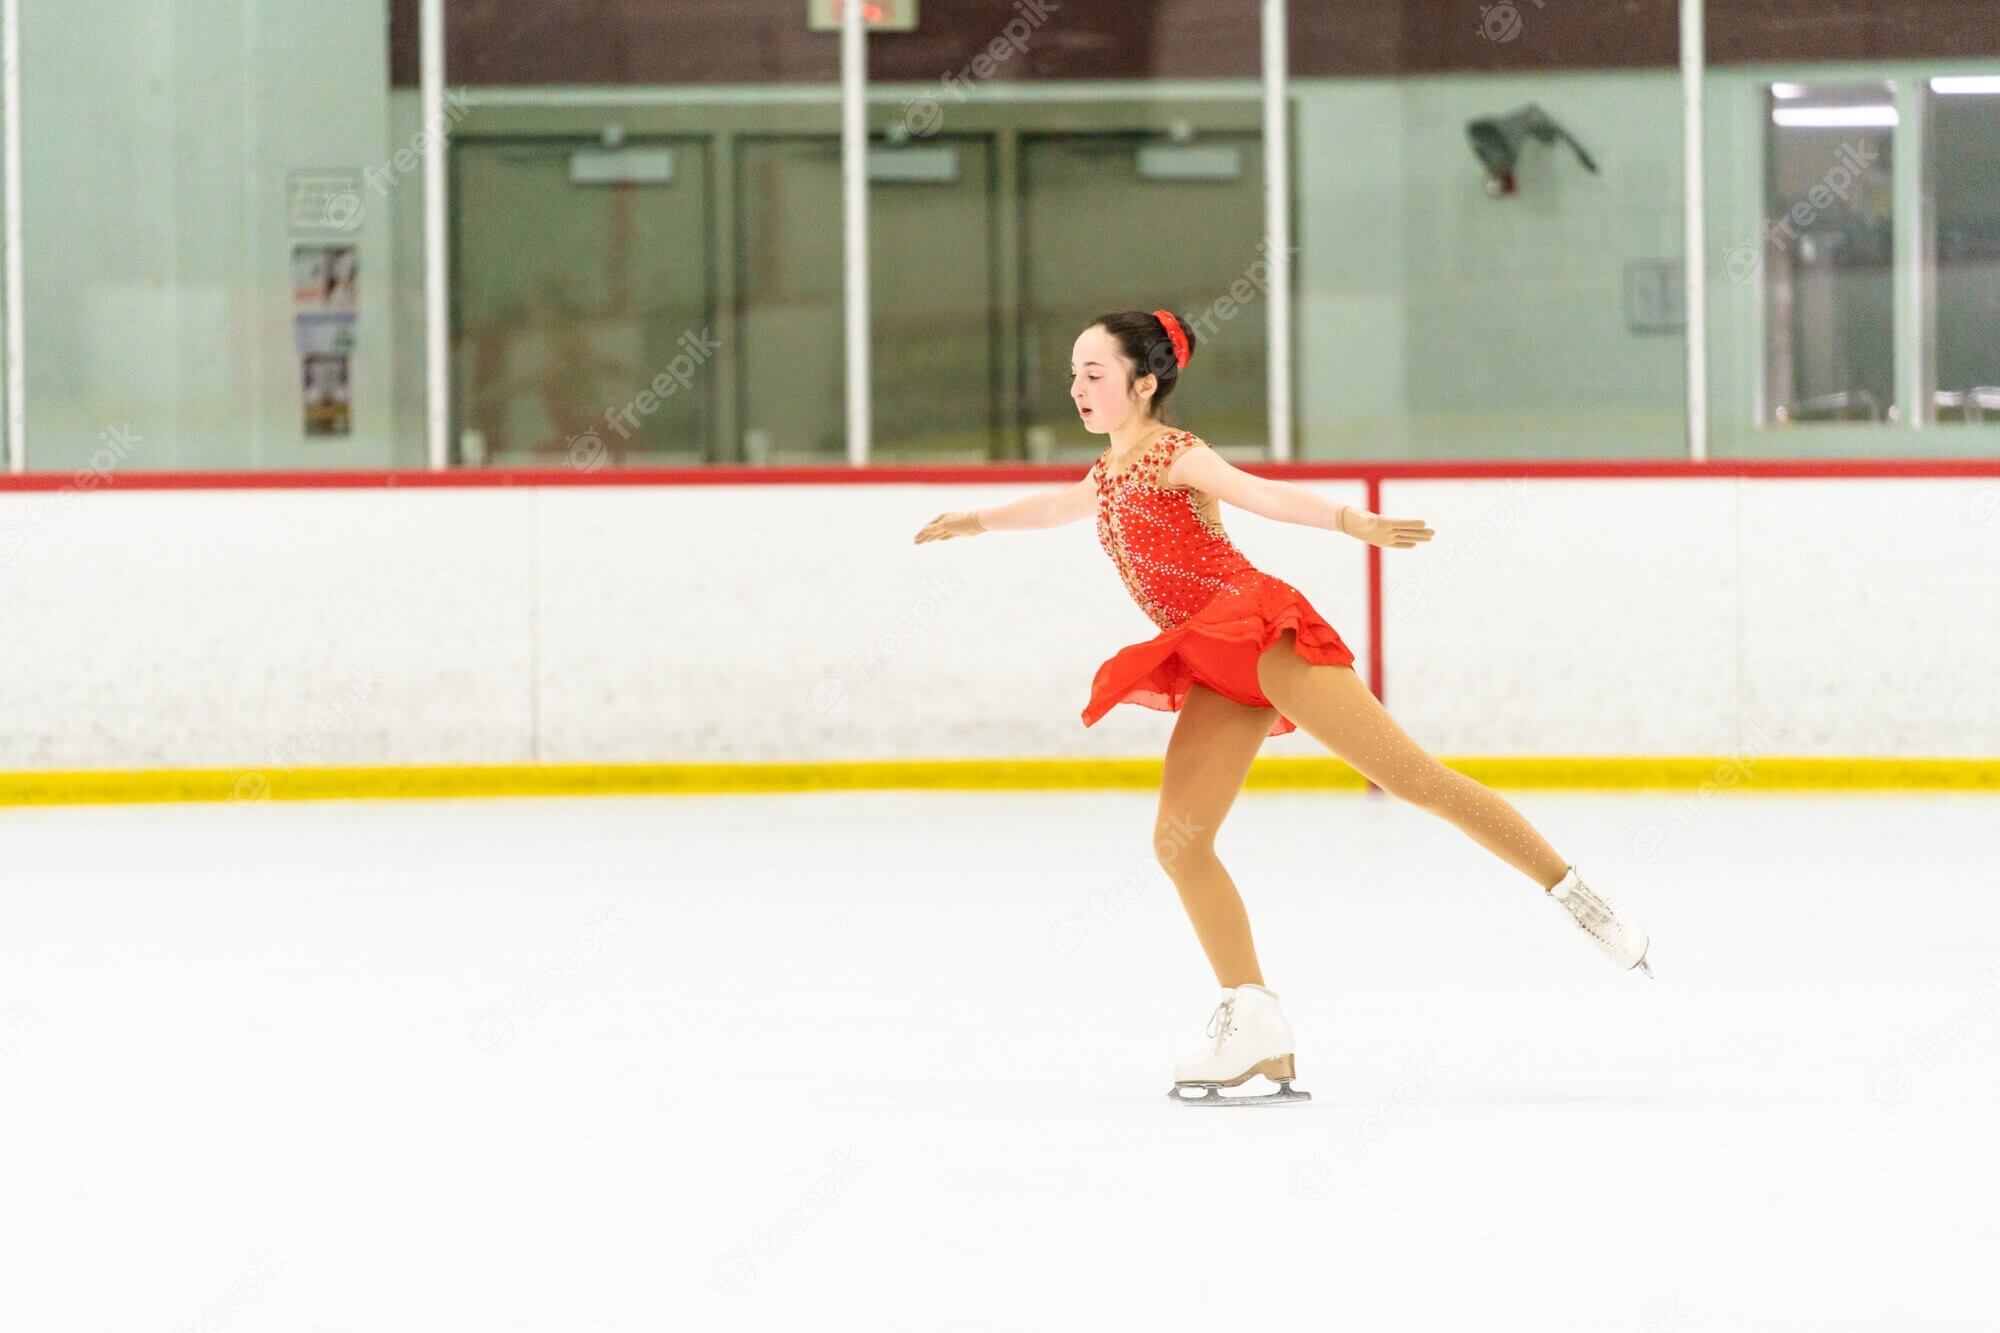 कॉर्डोवा स्केटिंग रिंक: स्केटिंग के शौकीनों के लिए एक रोमांचकारी स्वर्ग